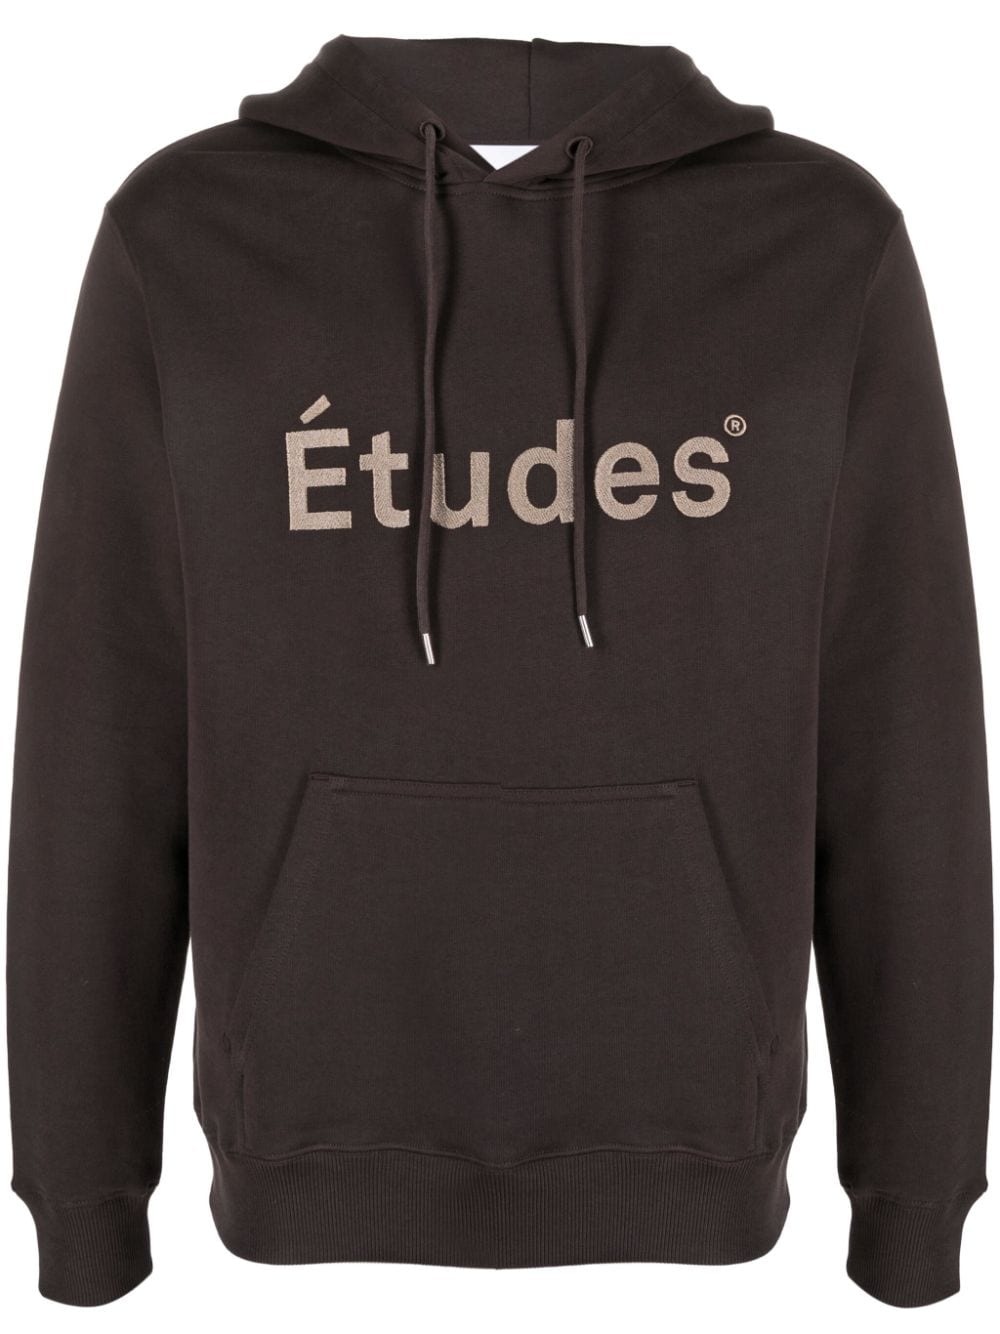 Klein Études organic cotton hoodie - 1